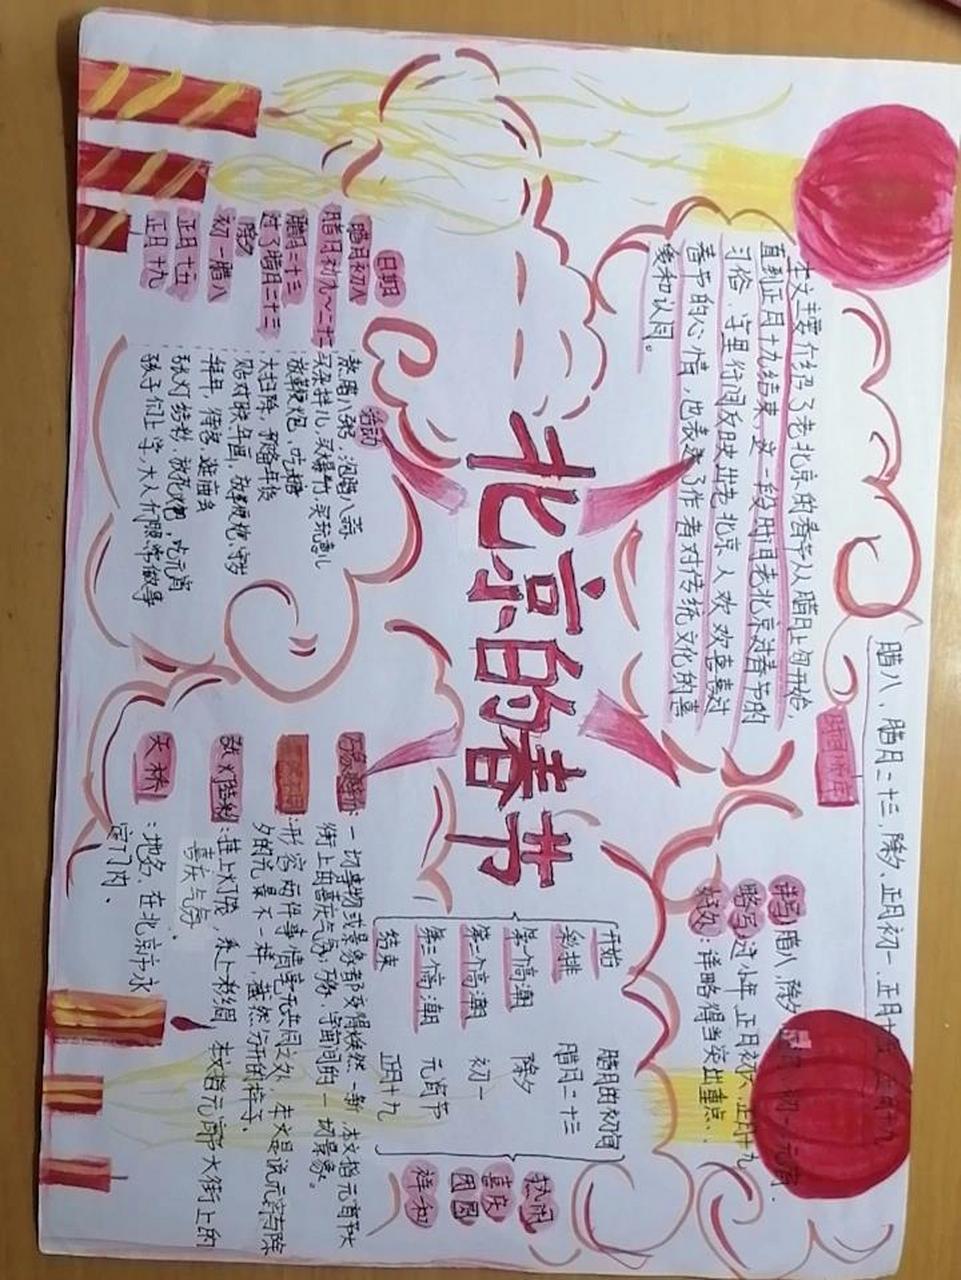 北京的春节思维导图 @限定奶昔九分甜 只为作业